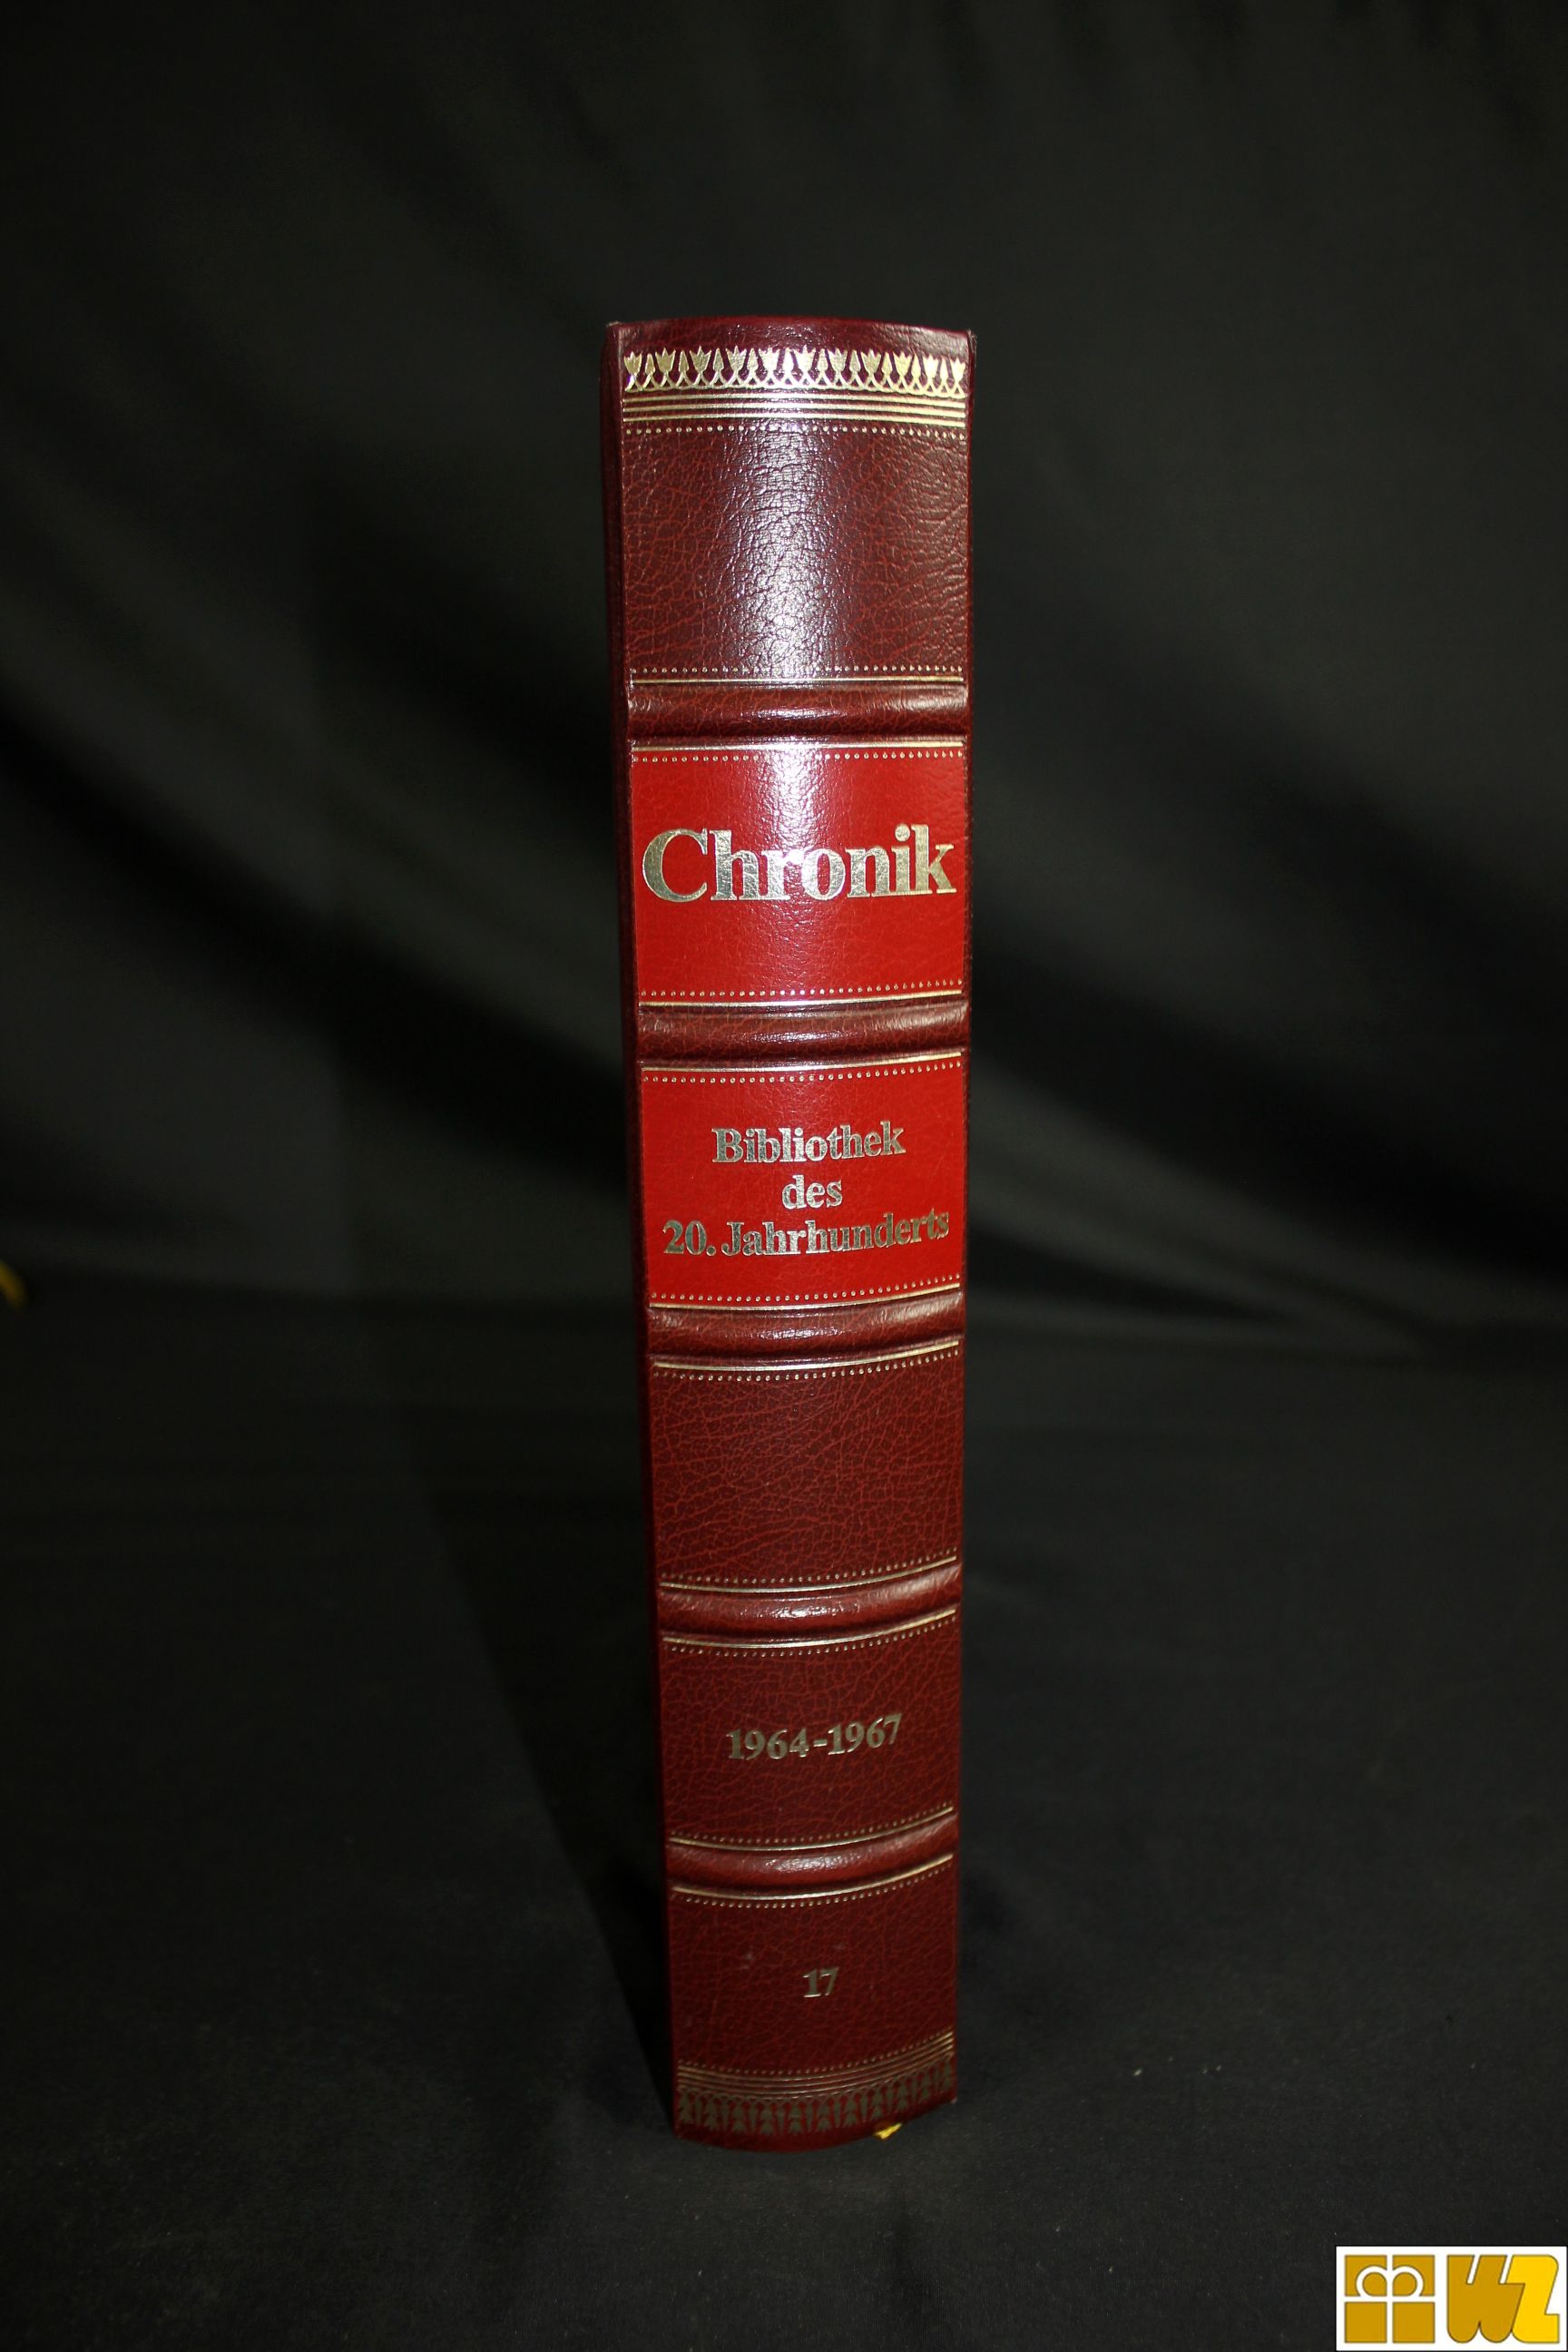 Bertelsmann Chronik Bibliothek des 20. Jahrhunderts, 3 Bände, gebraucht